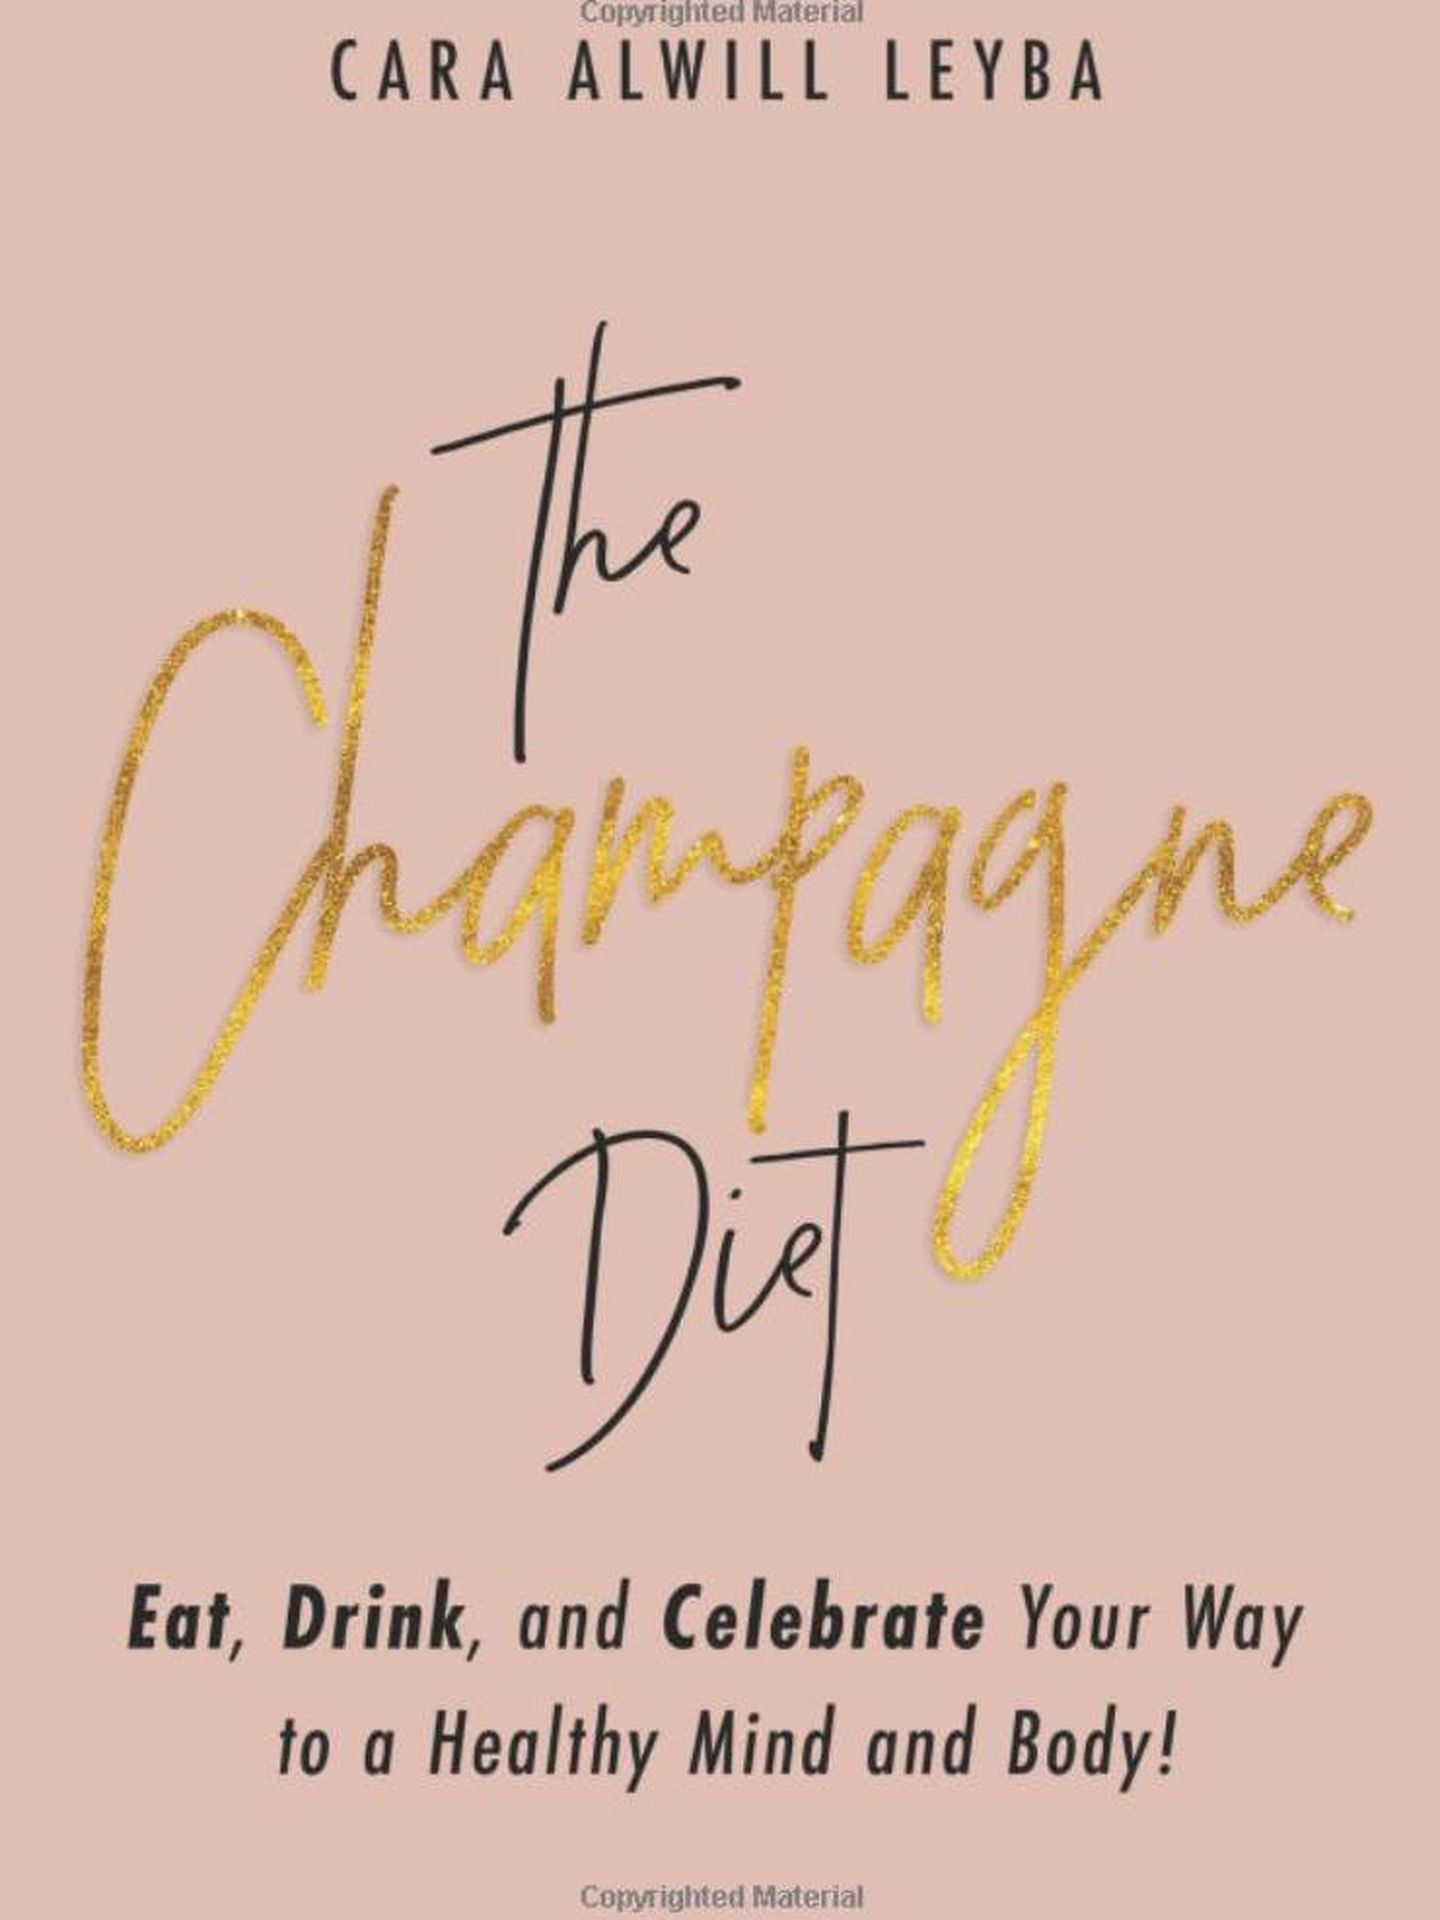 El libro de Cara Alwill Leyba 'La dieta del champán'